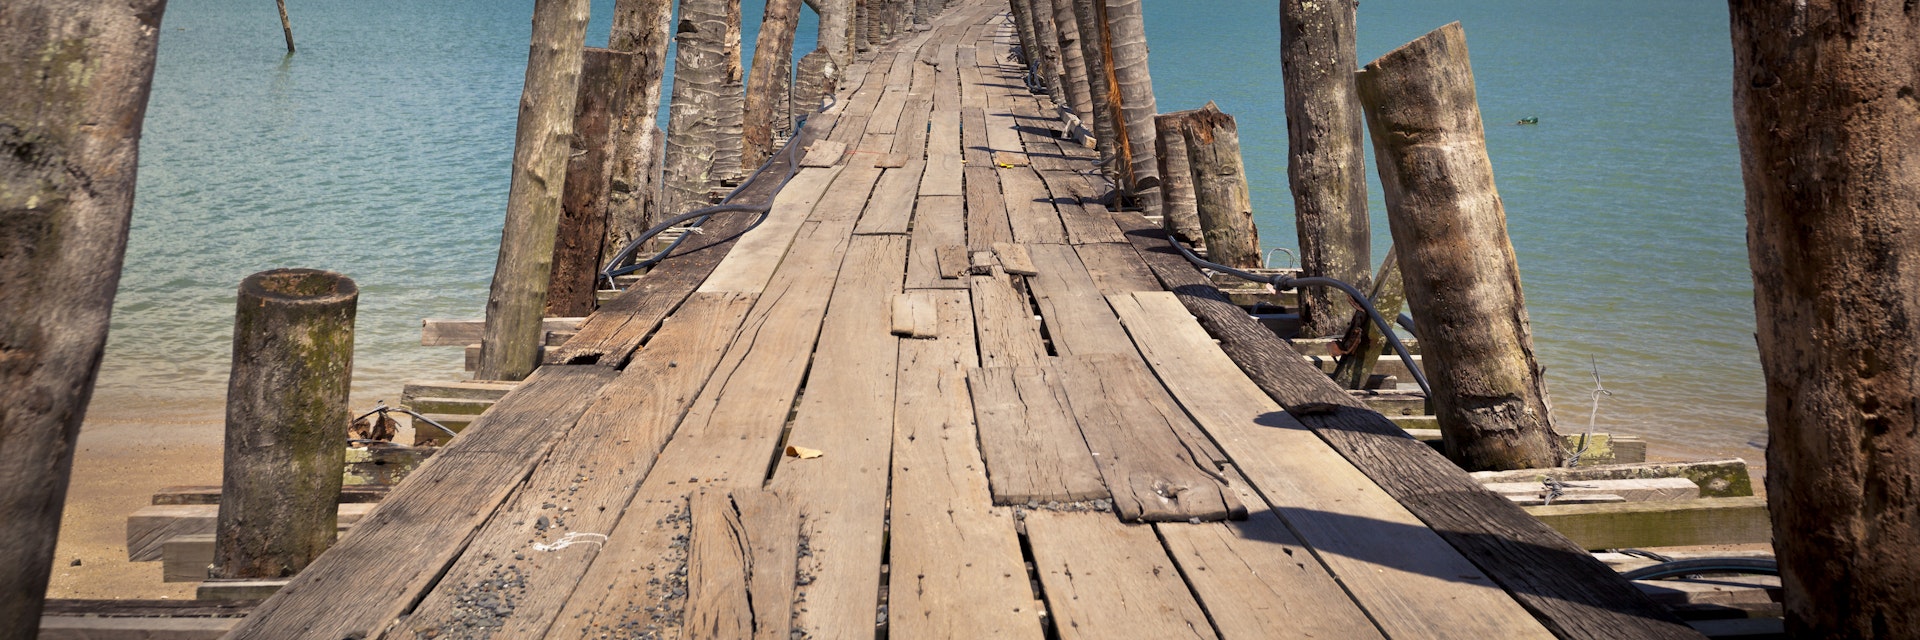 wooden pathway